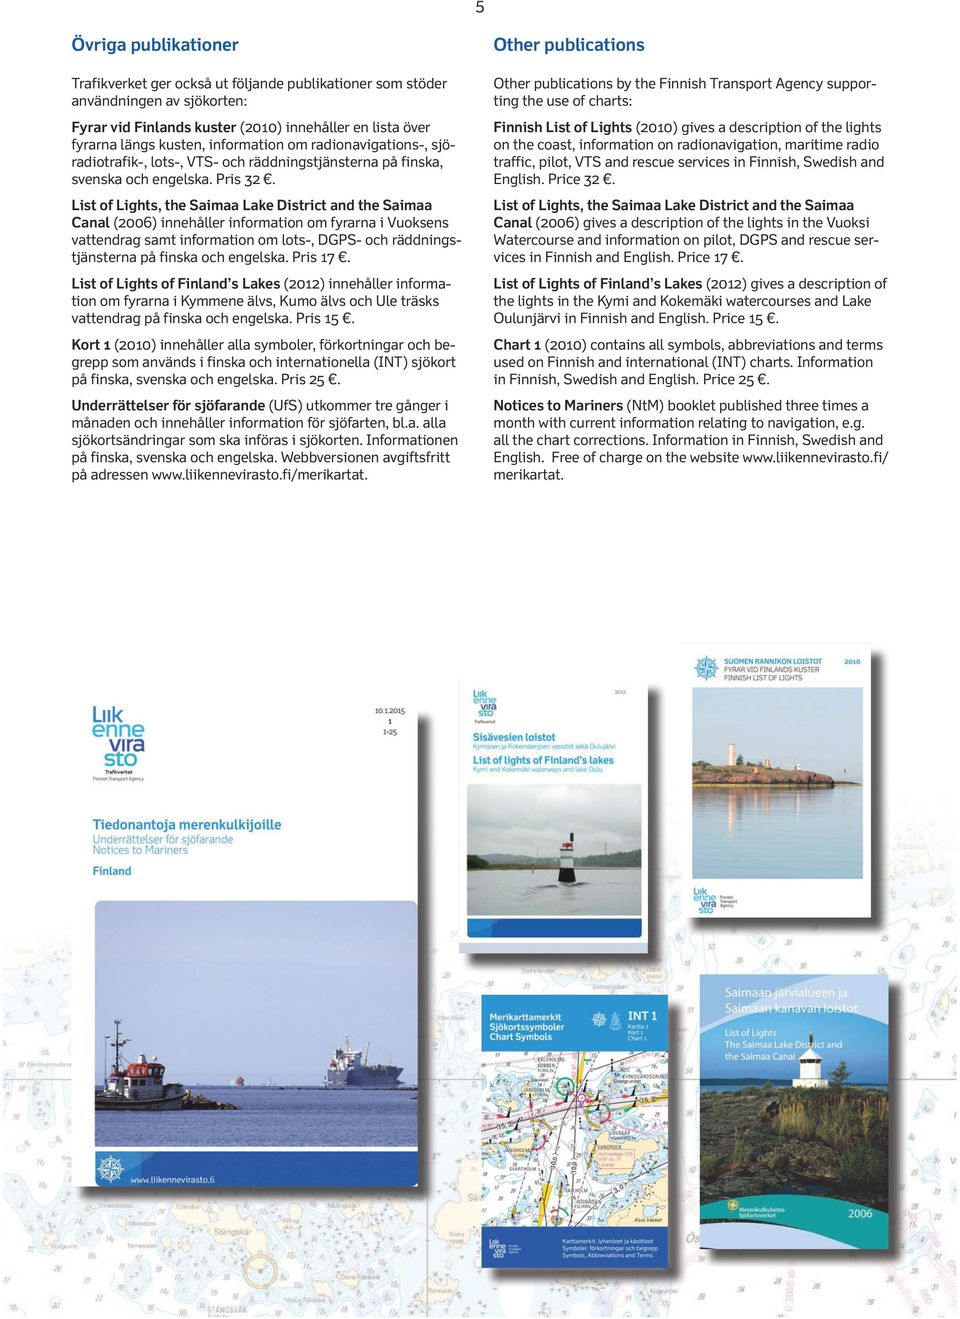 List of Lights, the Saimaa Lake District and the Saimaa Canal 2006) innehåller information om fyrarna i Vuoksens vattendrag samt information om lots-, DGPS- och räddningstjänsterna på finska och